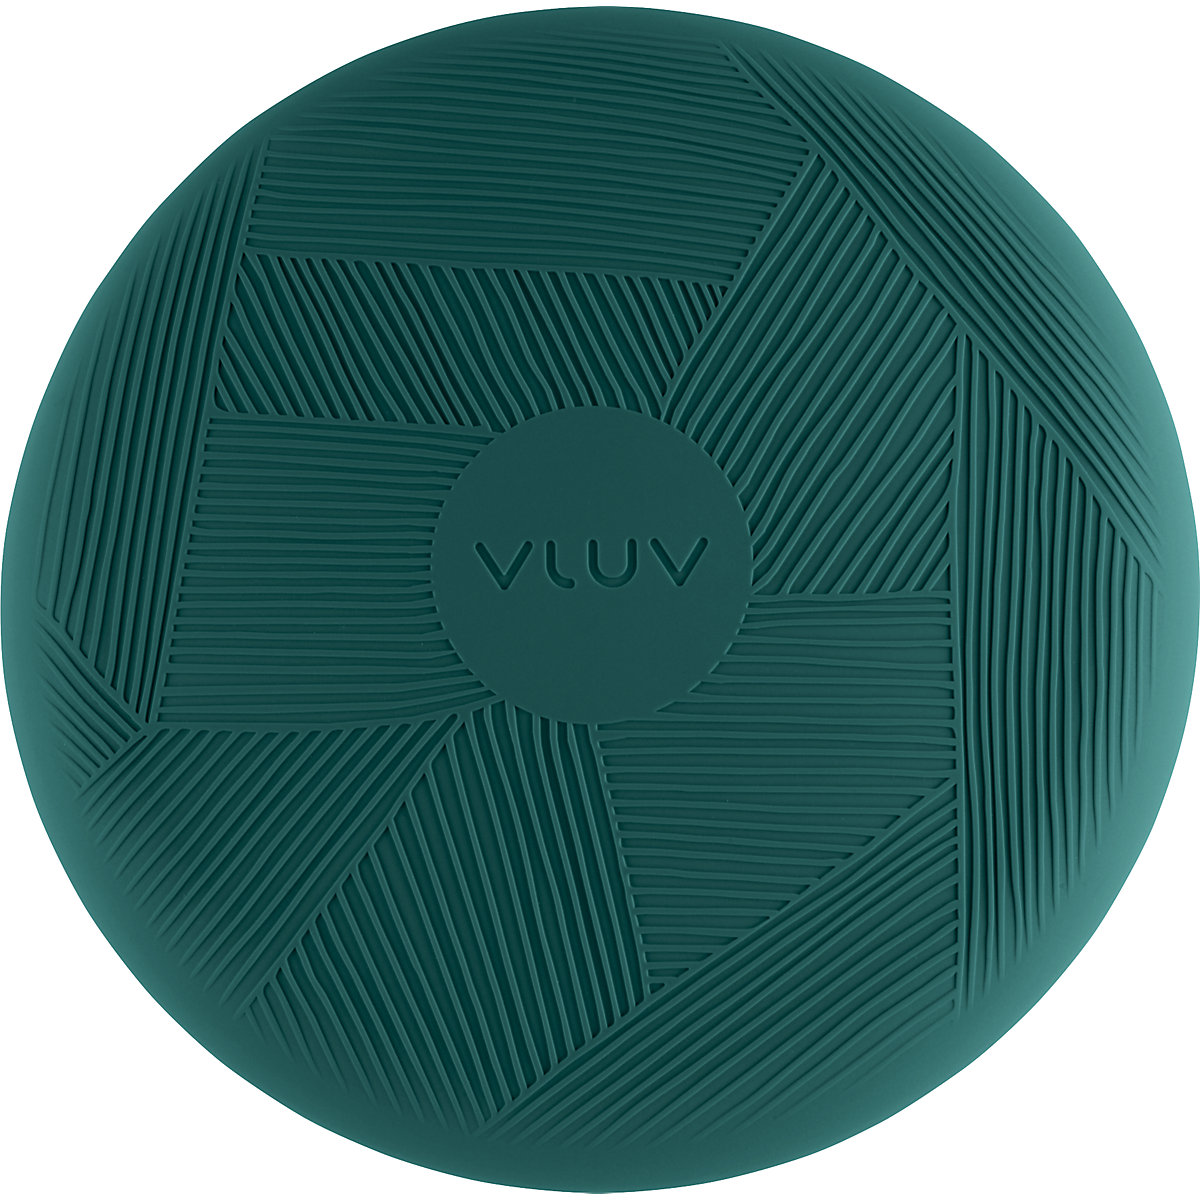 PED balance cushion – VLUV (Product illustration 15)